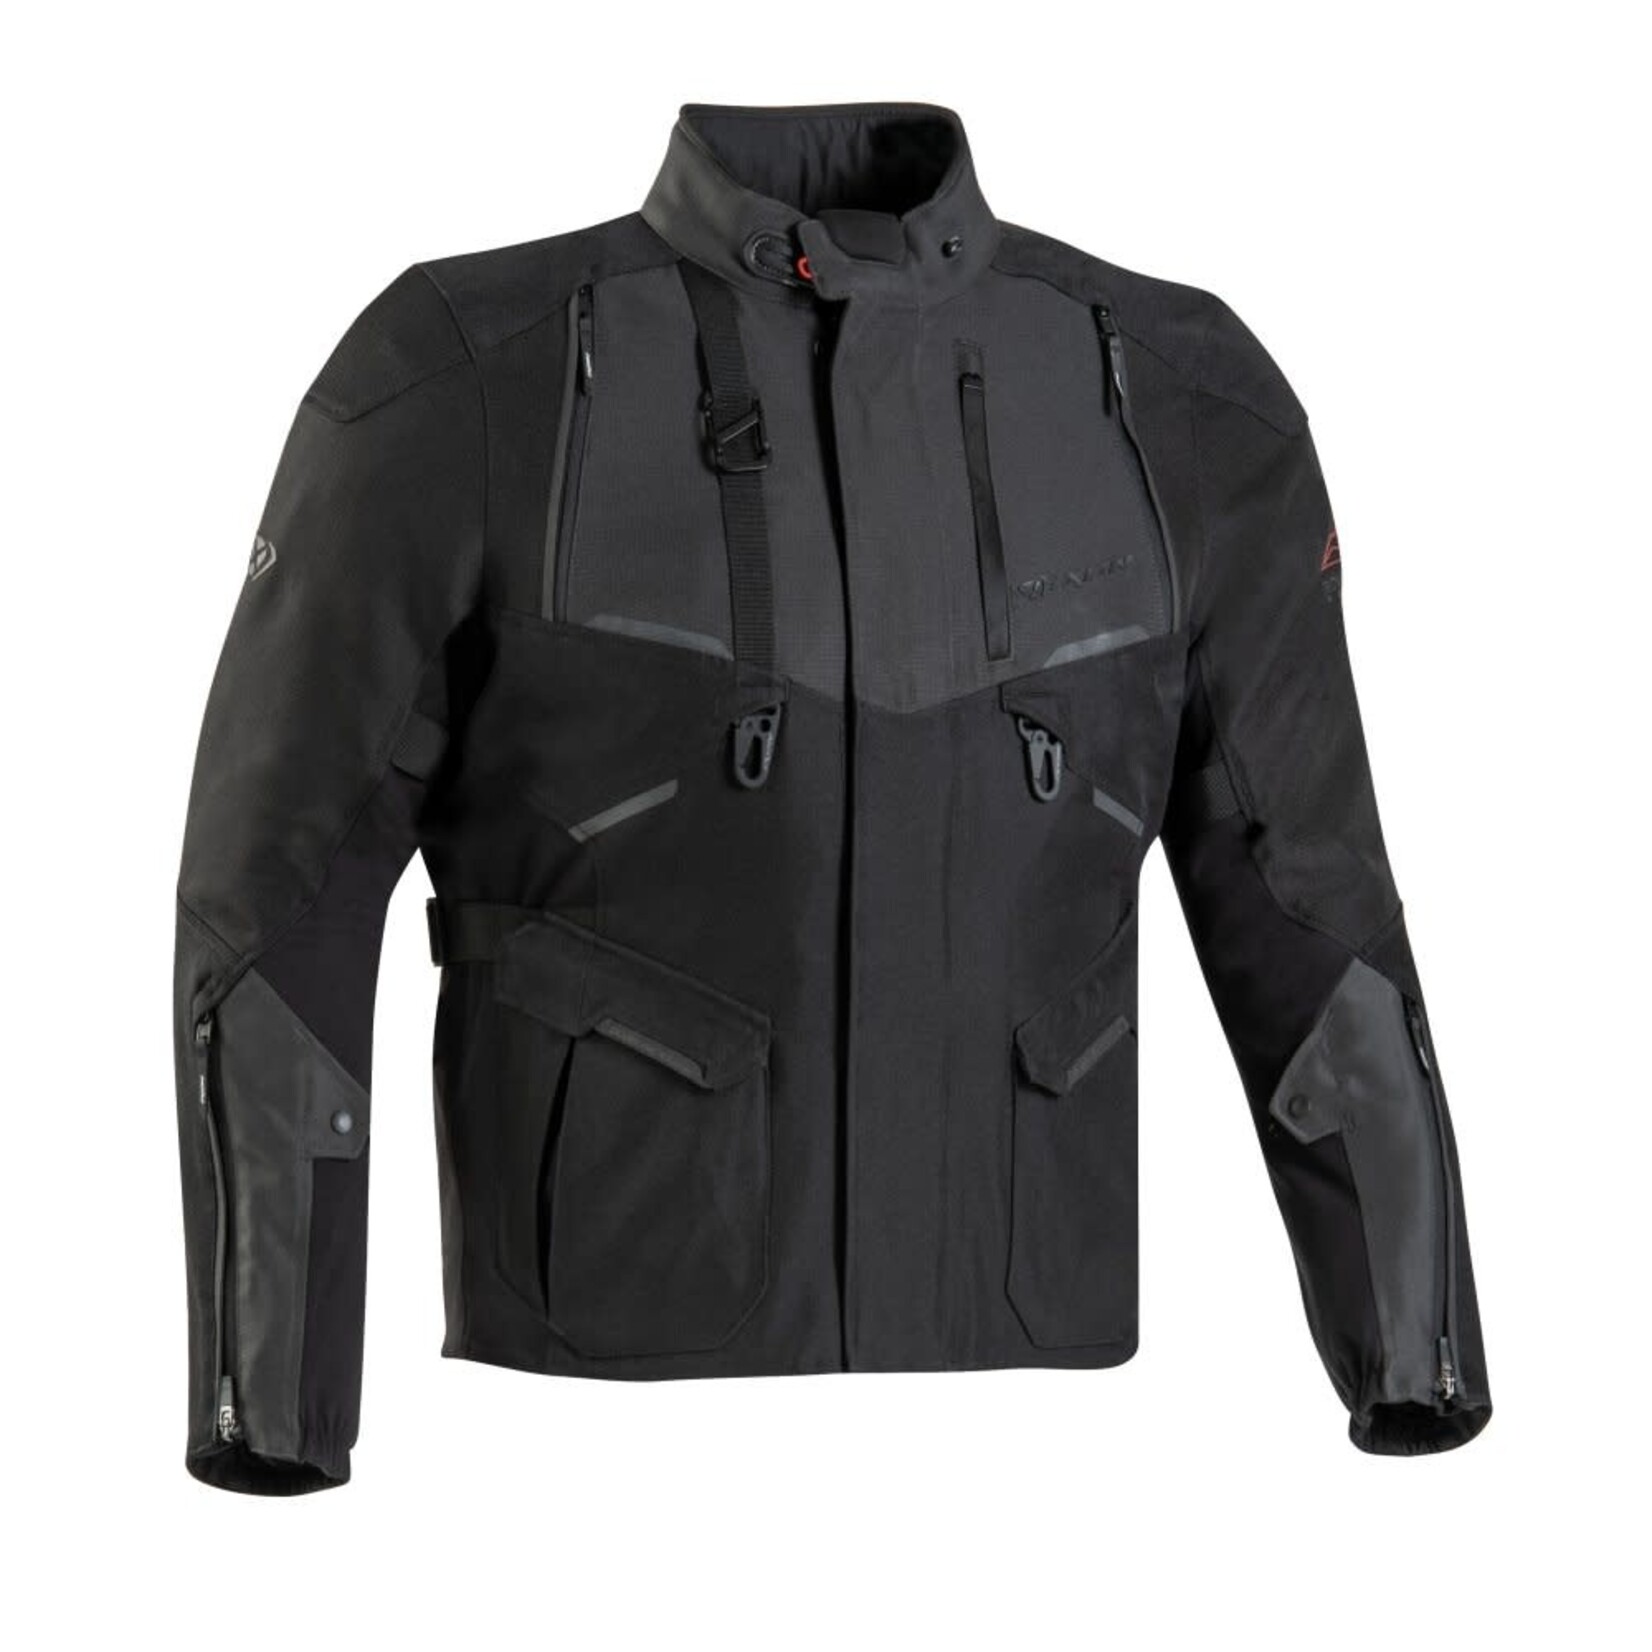 Ixon Ixon jacket textile eddas c black/anthracite